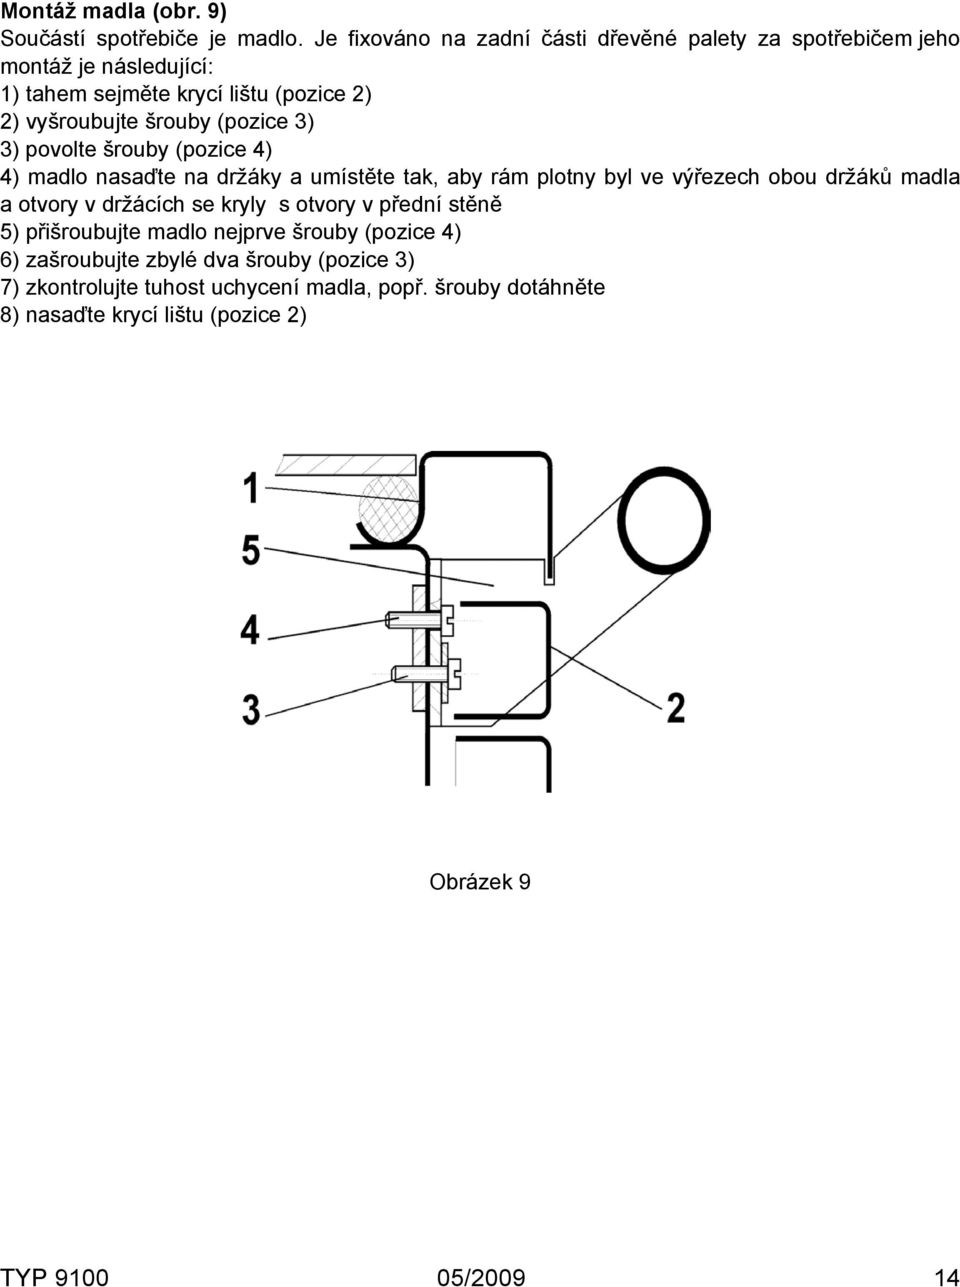 (pozice 3) 3) povolte šrouby (pozice 4) 4) madlo nasaďte na držáky a umístěte tak, aby rám plotny byl ve výřezech obou držáků madla a otvory v